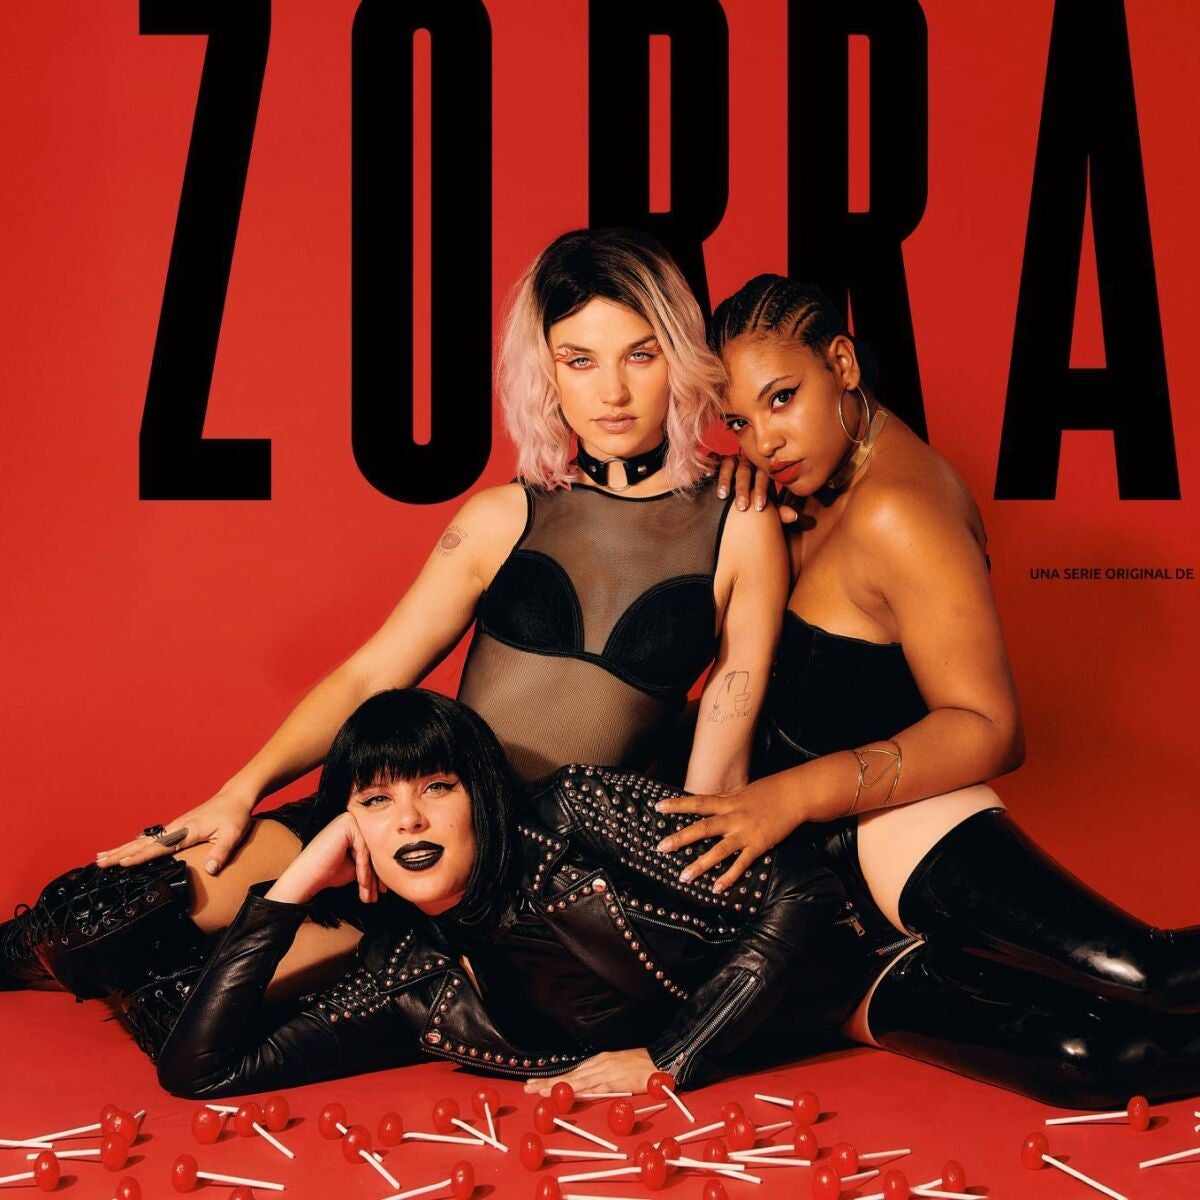 Así es Zorras, la serie con Andrea Ros, Tai Fati y Mirela Balic sobre la revolución sexual de tres mujeres que llega en verano Foto